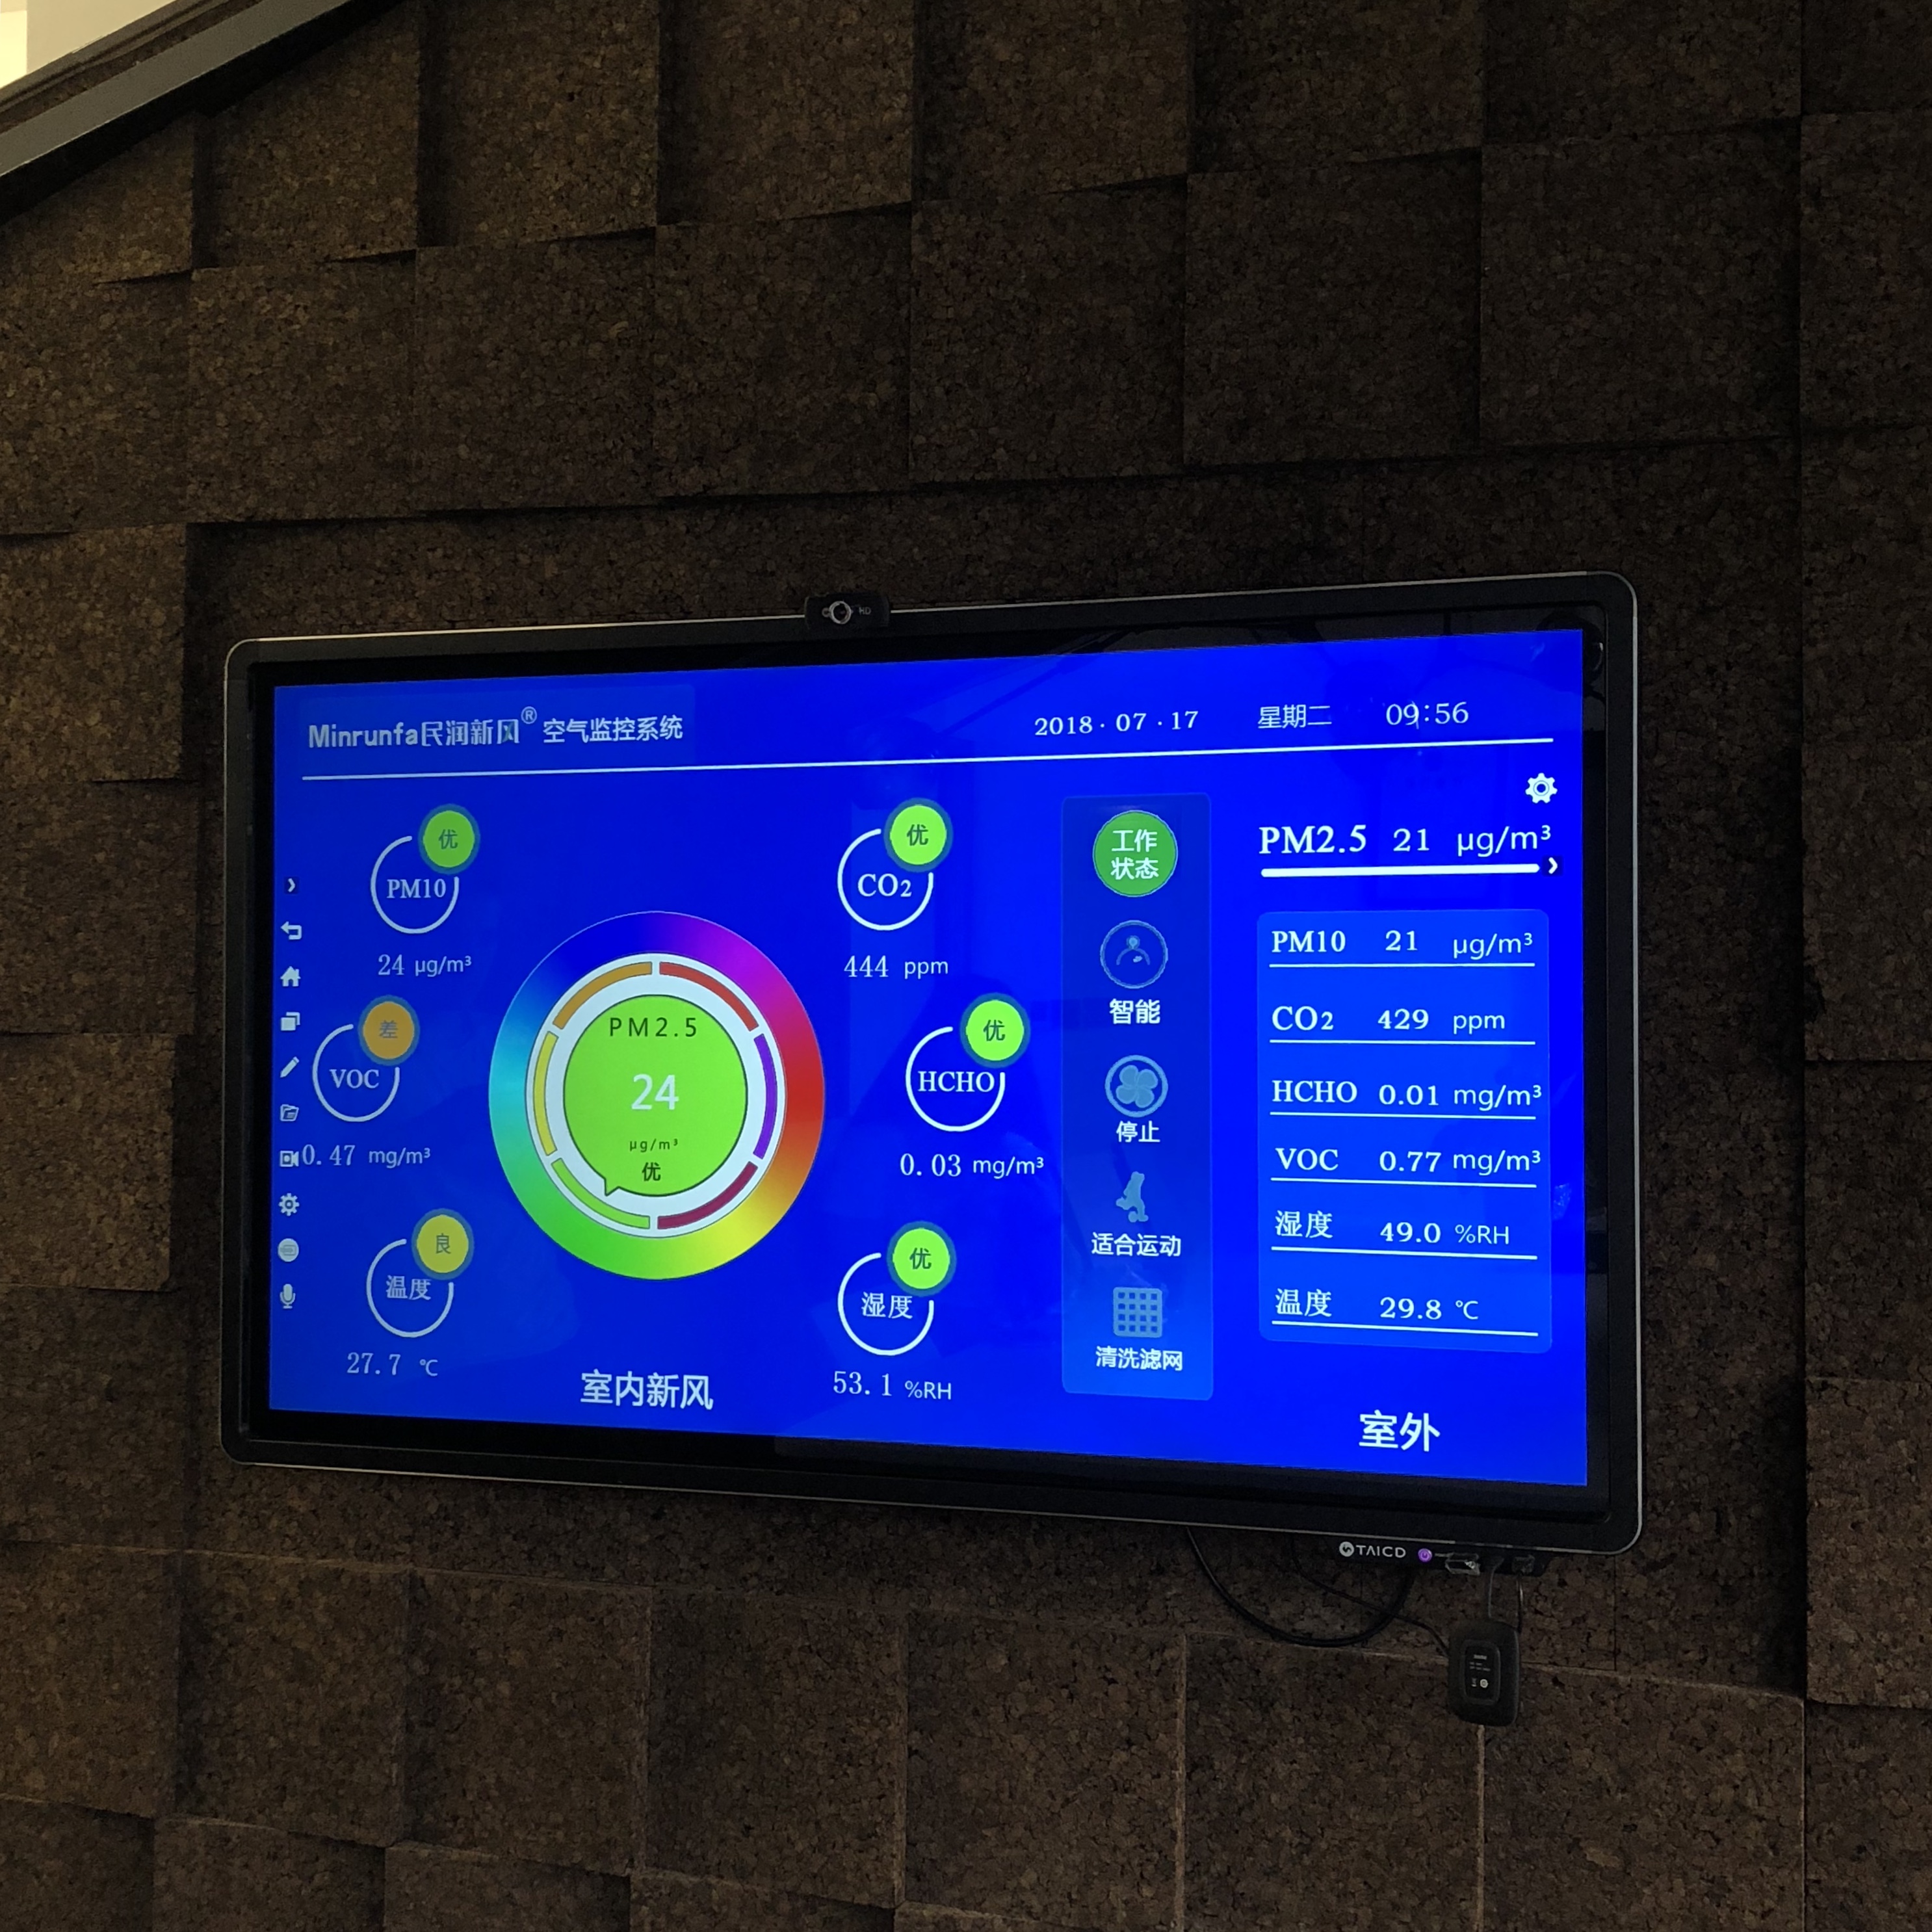 会议室平板兼空气检测显示屏.jpg